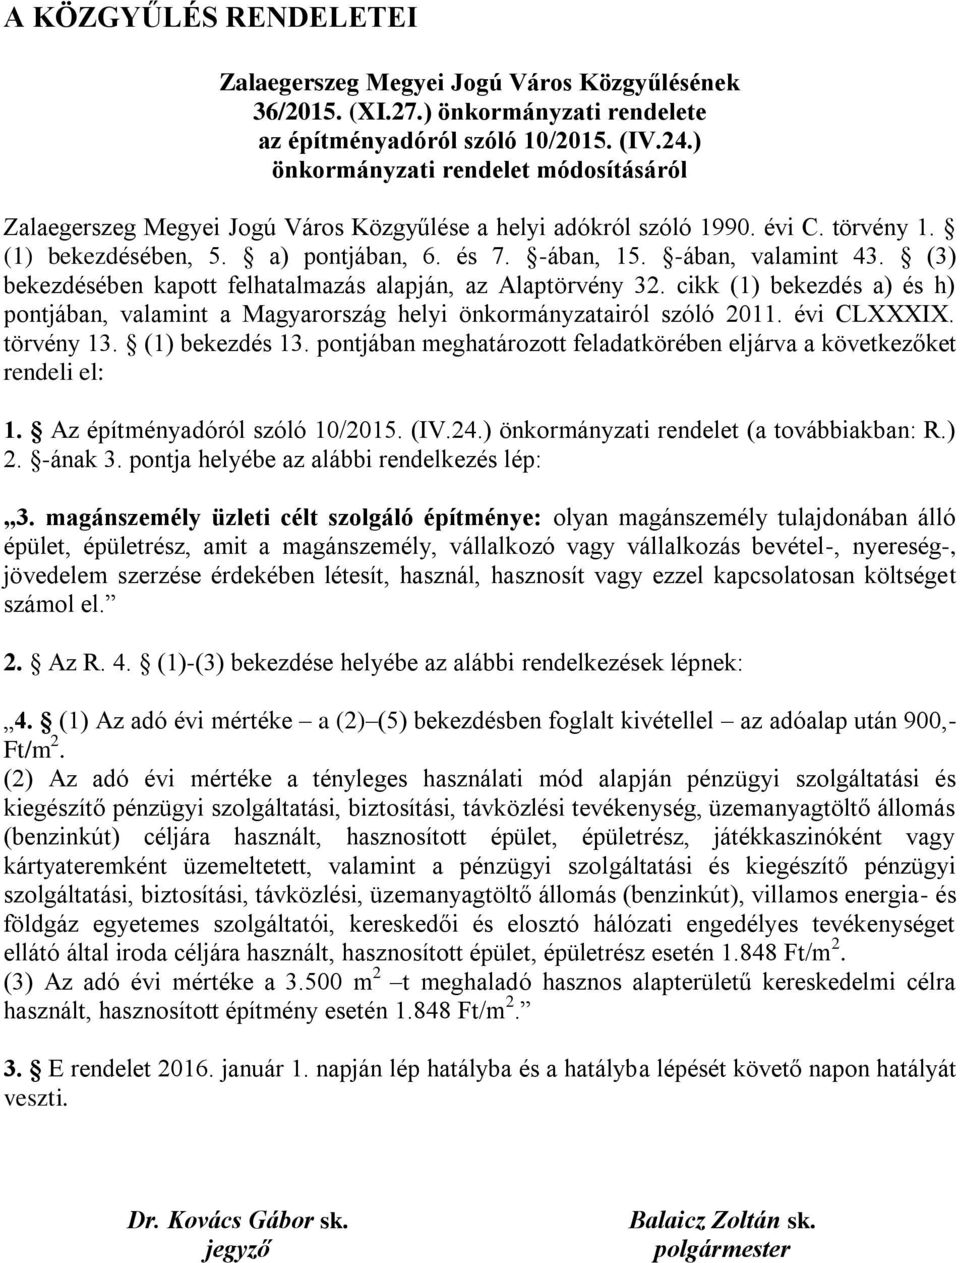 -ában, valamint 43. (3) bekezdésében kapott felhatalmazás alapján, az Alaptörvény 32. cikk (1) bekezdés a) és h) pontjában, valamint a Magyarország helyi önkormányzatairól szóló 2011. évi CLXXXIX.